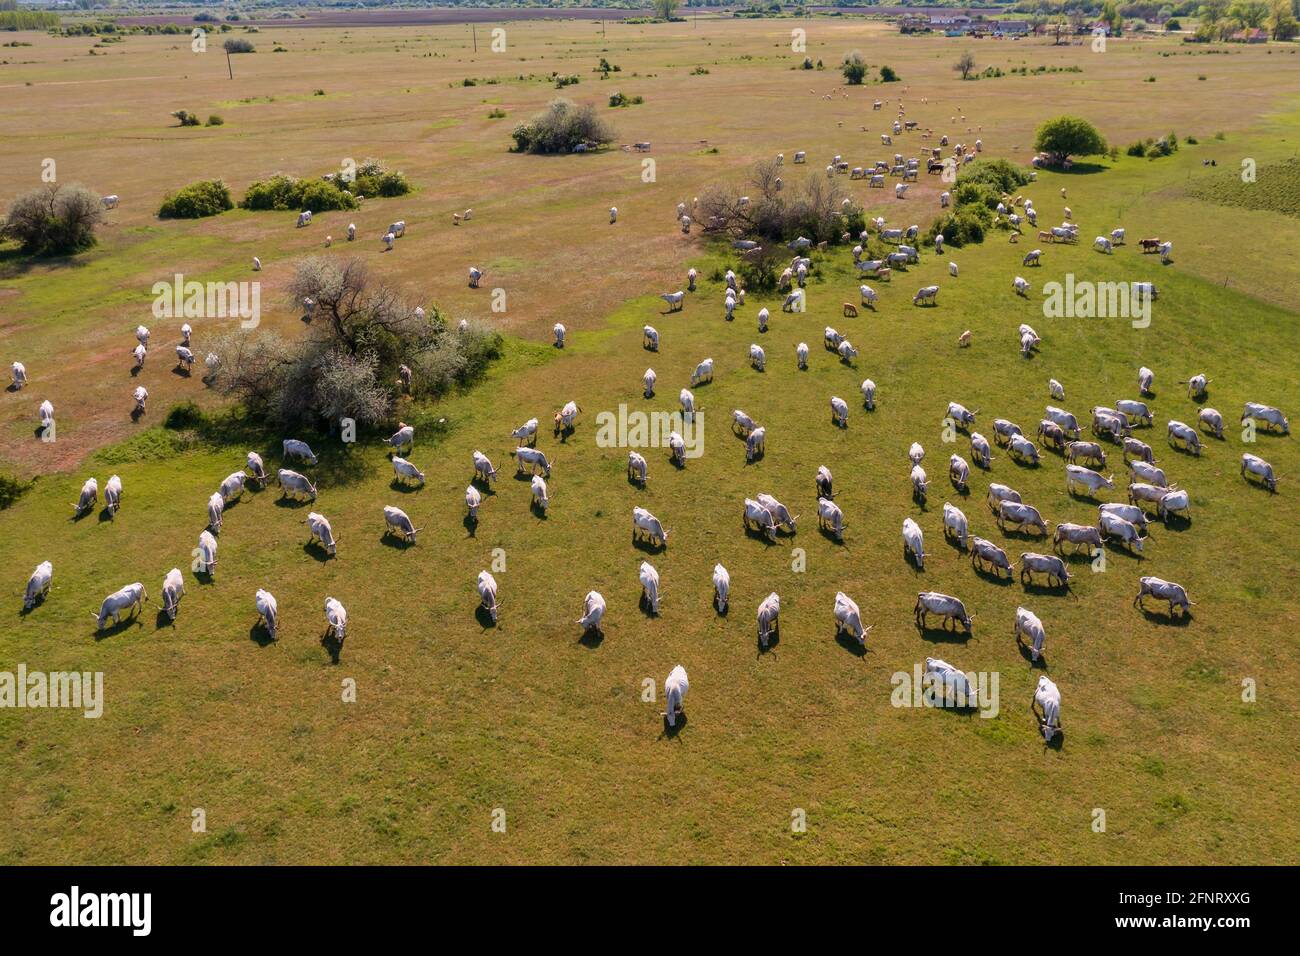 Vaches de bovins gris hongrois avec de longues cornes. Vue aérienne sur un troupeau marchant dans un champ. Animal phare de Hongrie qu'il a unique délicieux viande Banque D'Images